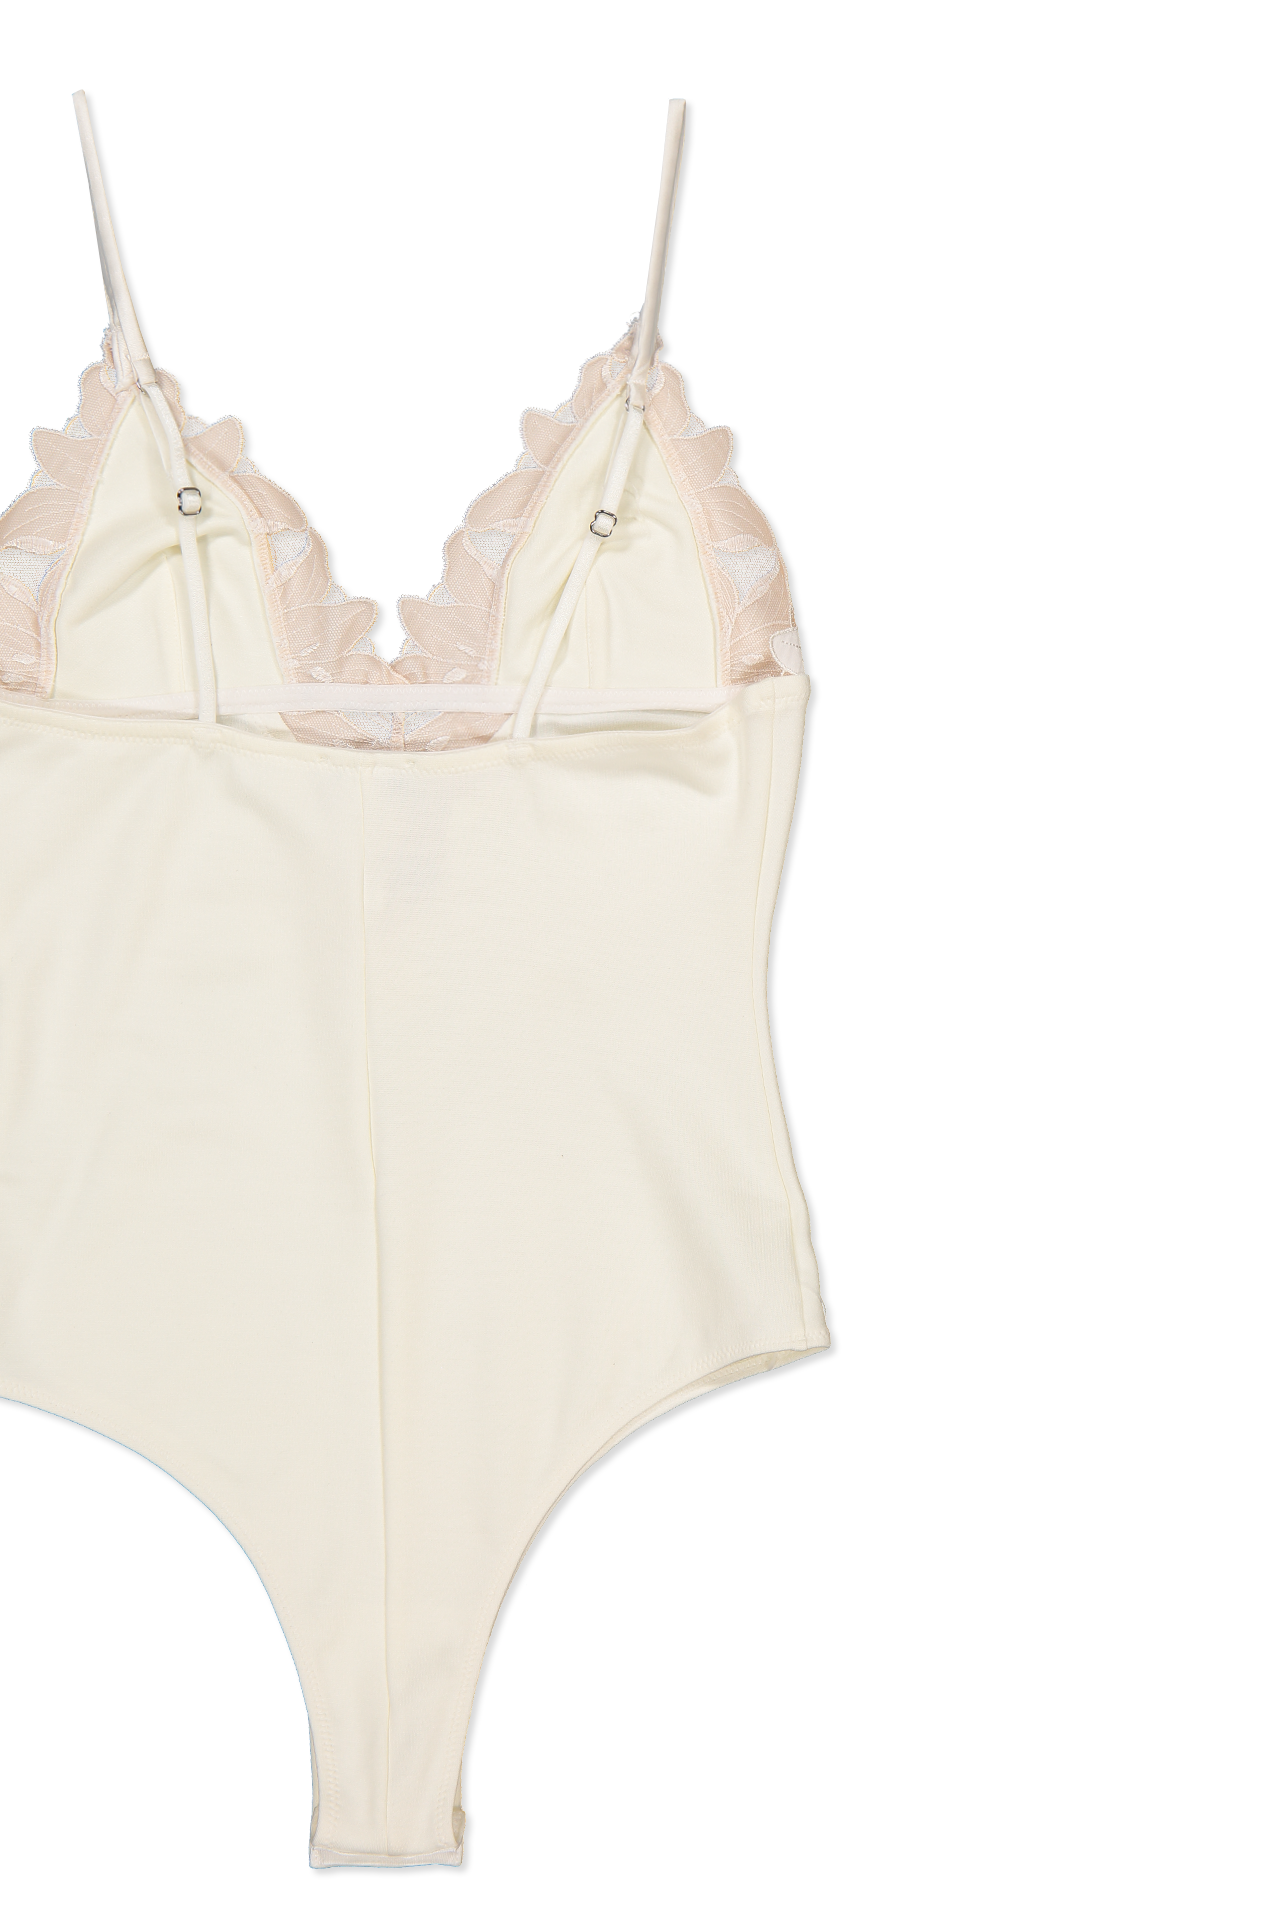 Luxury Lace Lingerie  Lace Bodysuits & Underwear – Fleur du Mal